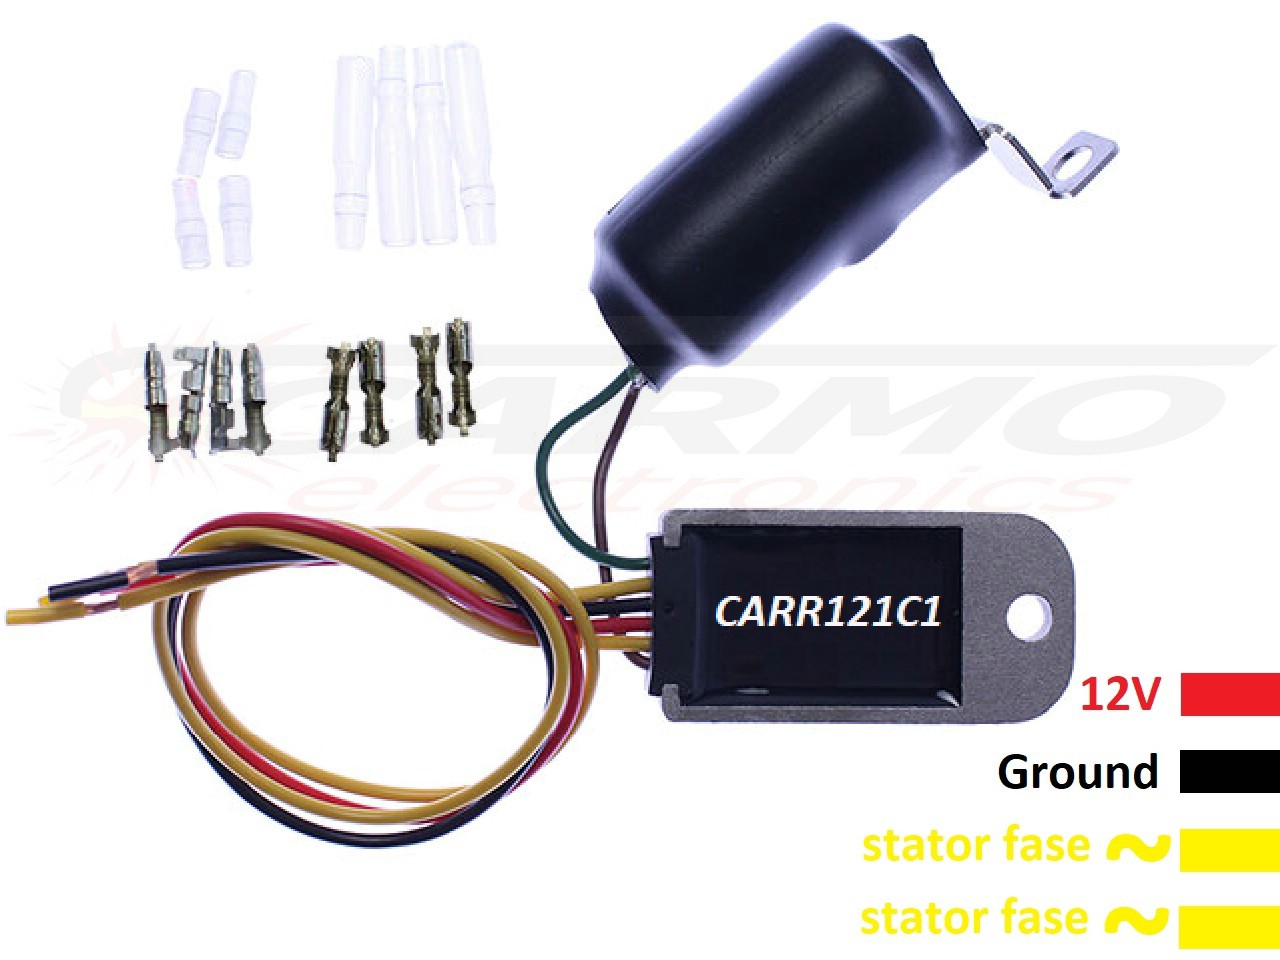 CARR121C1 - Raddrizzatore regolatore di tensione bifase con condensatore, nessuna batteria necessaria - per illuminazione a LED - Clicca l'immagine per chiudere